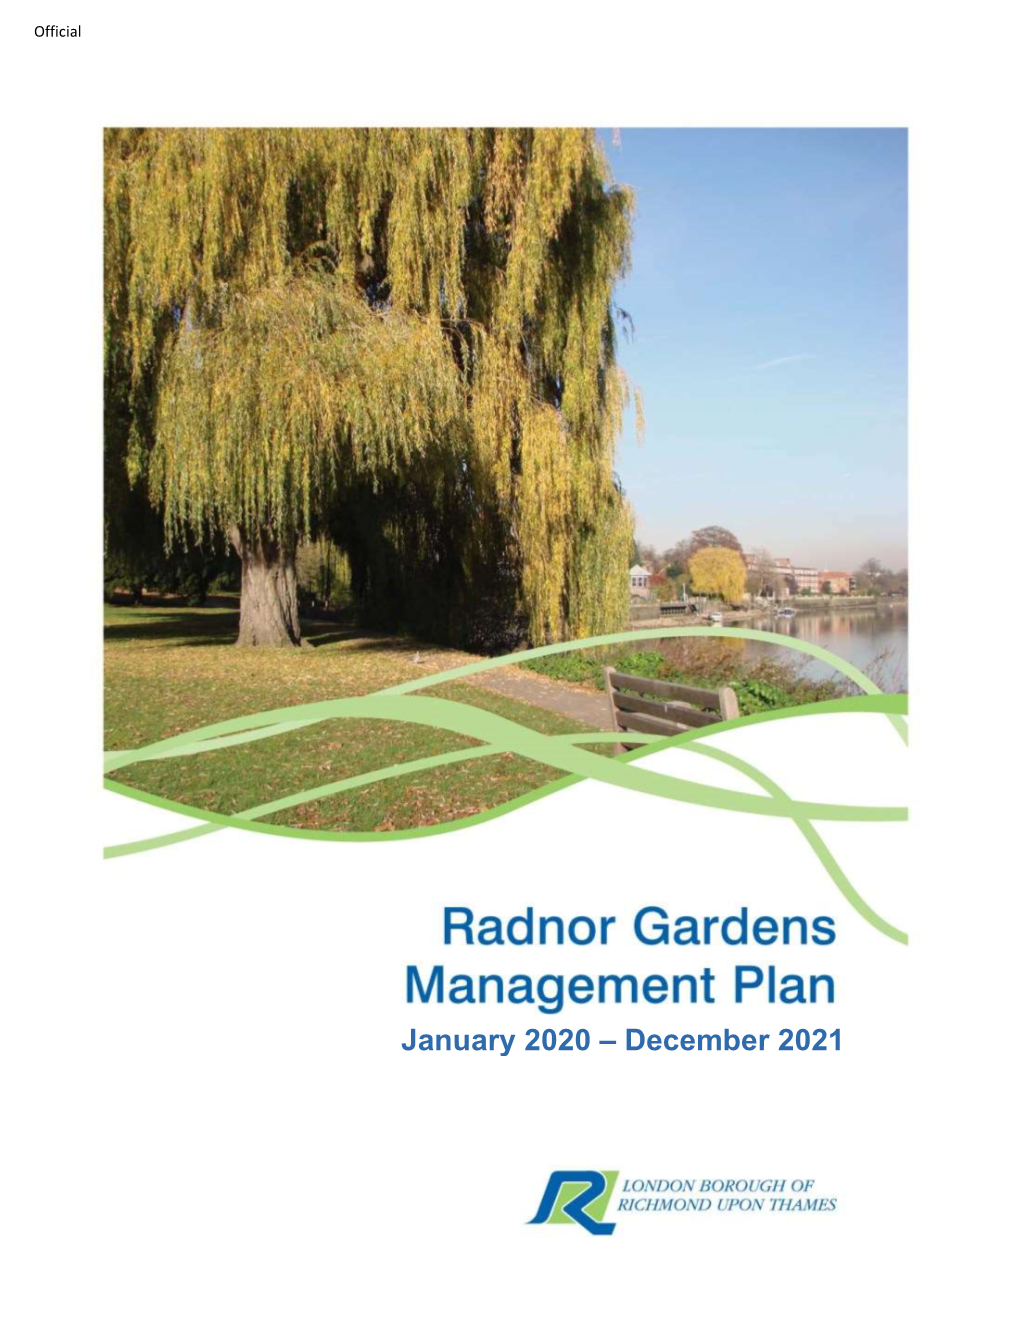 Radnor Gardens Management Plan 2020-21: Foreword